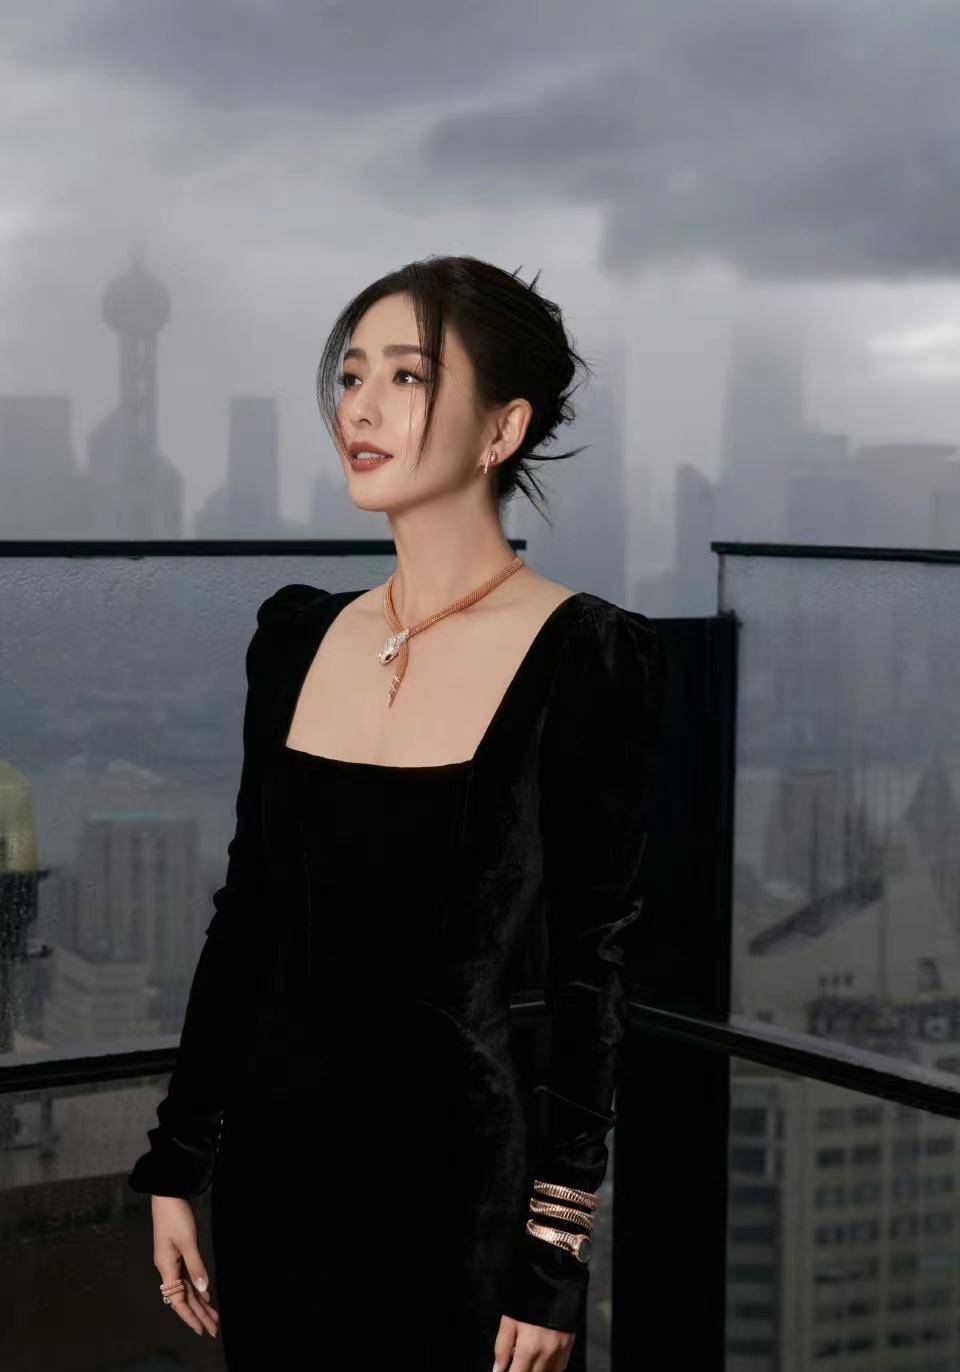 佟丽娅穿黑色丝绒长裙出席时尚活动,高挑时尚,魅力十足